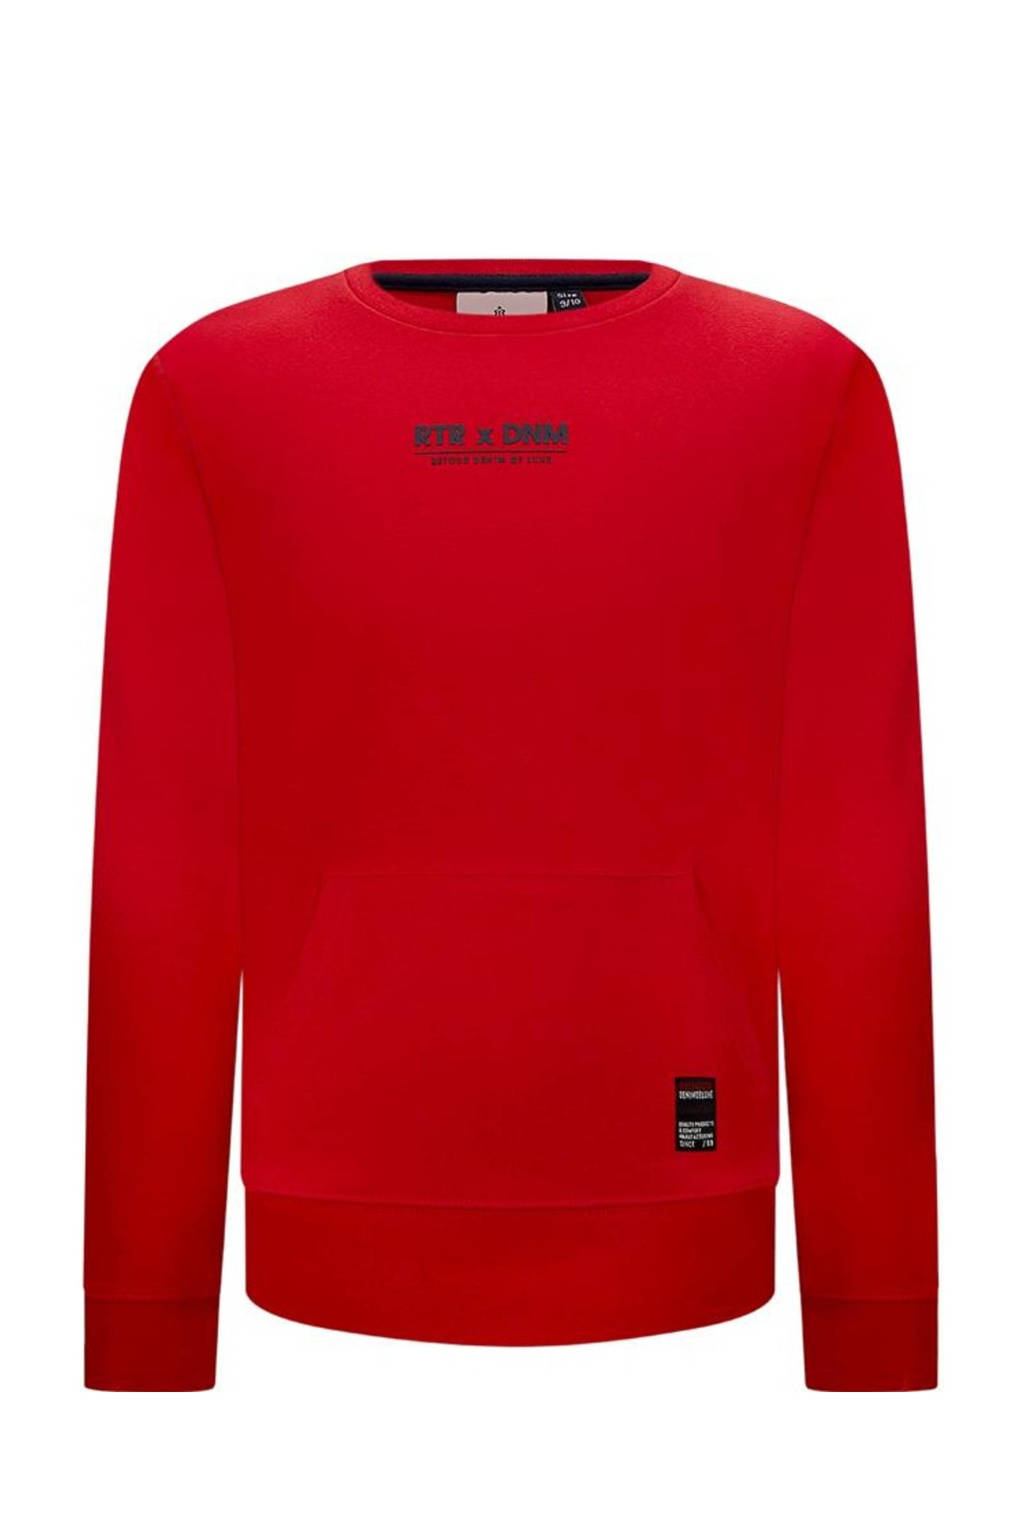 Rode jongens Retour Denim sweater Borya met logo dessin, lange mouwen en ronde hals